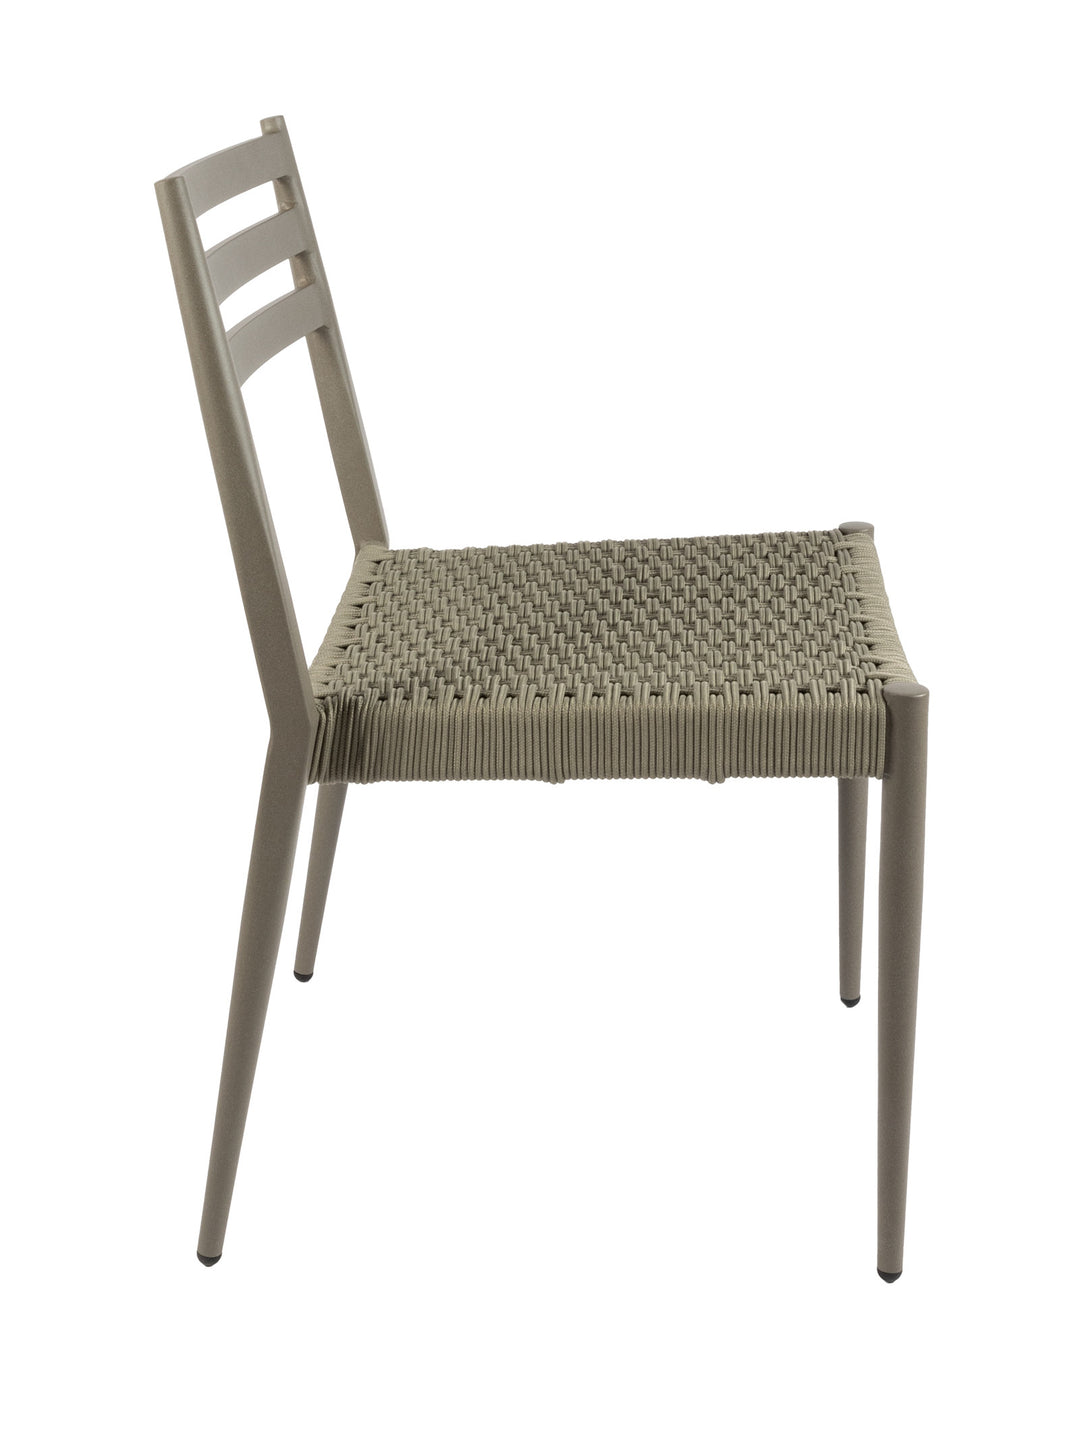 Hermes Outdoor Chair - Hertex Haus Online - badge_fully_outdoor